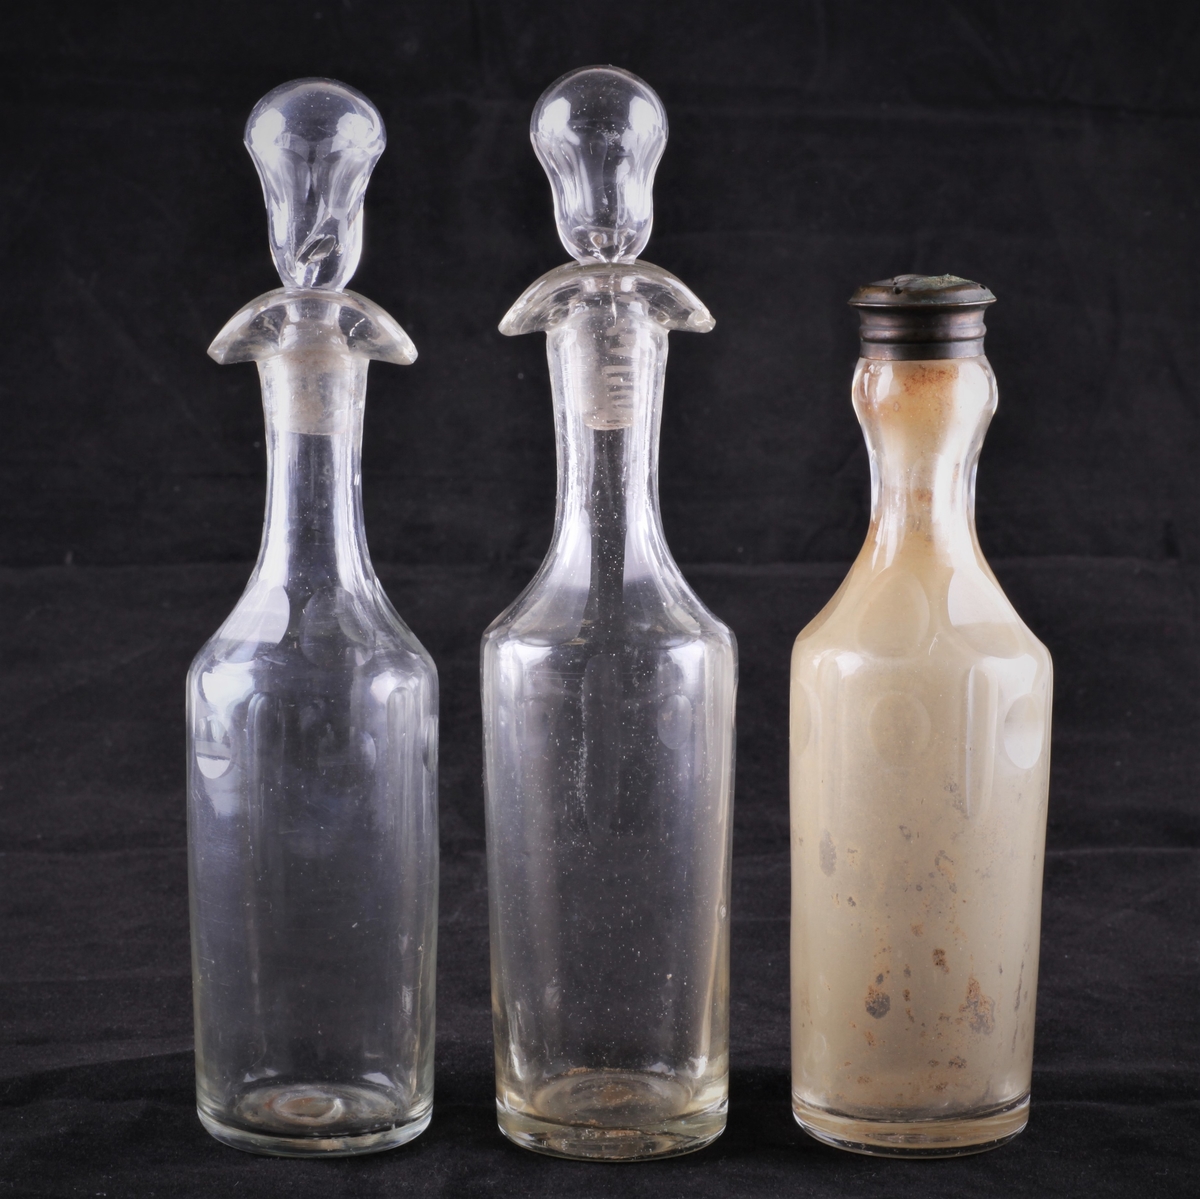 Flasken er slank med dobbel helletut og glasspropp. Den er dekorert med fassettsliping og olivensliping i annethvert felt øverst på kroppen.